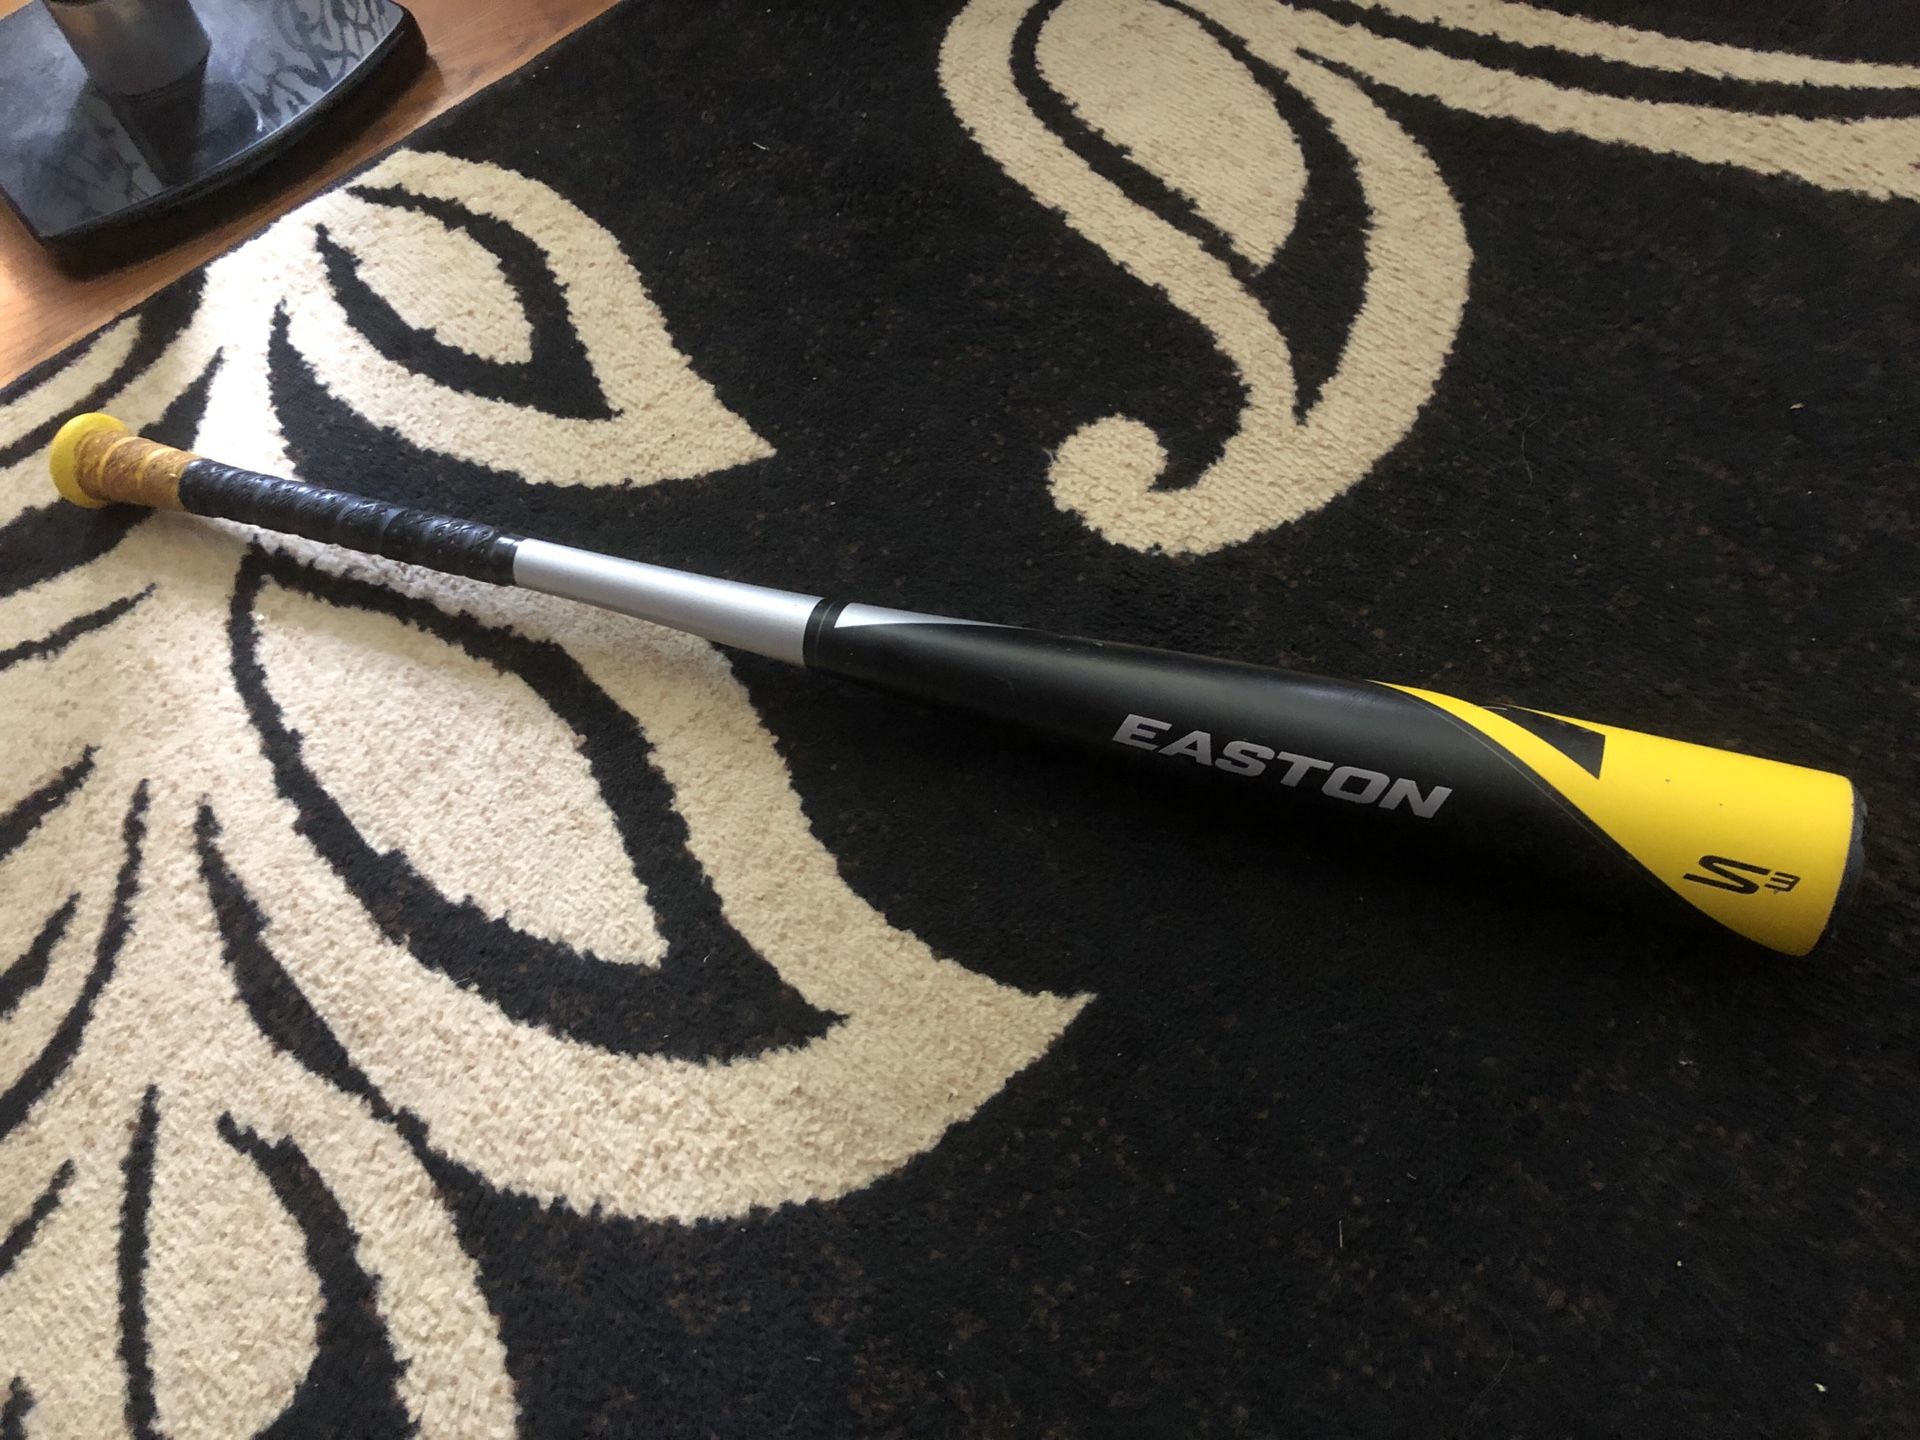 Easton S3 32”29oz BBCOR baseball bat